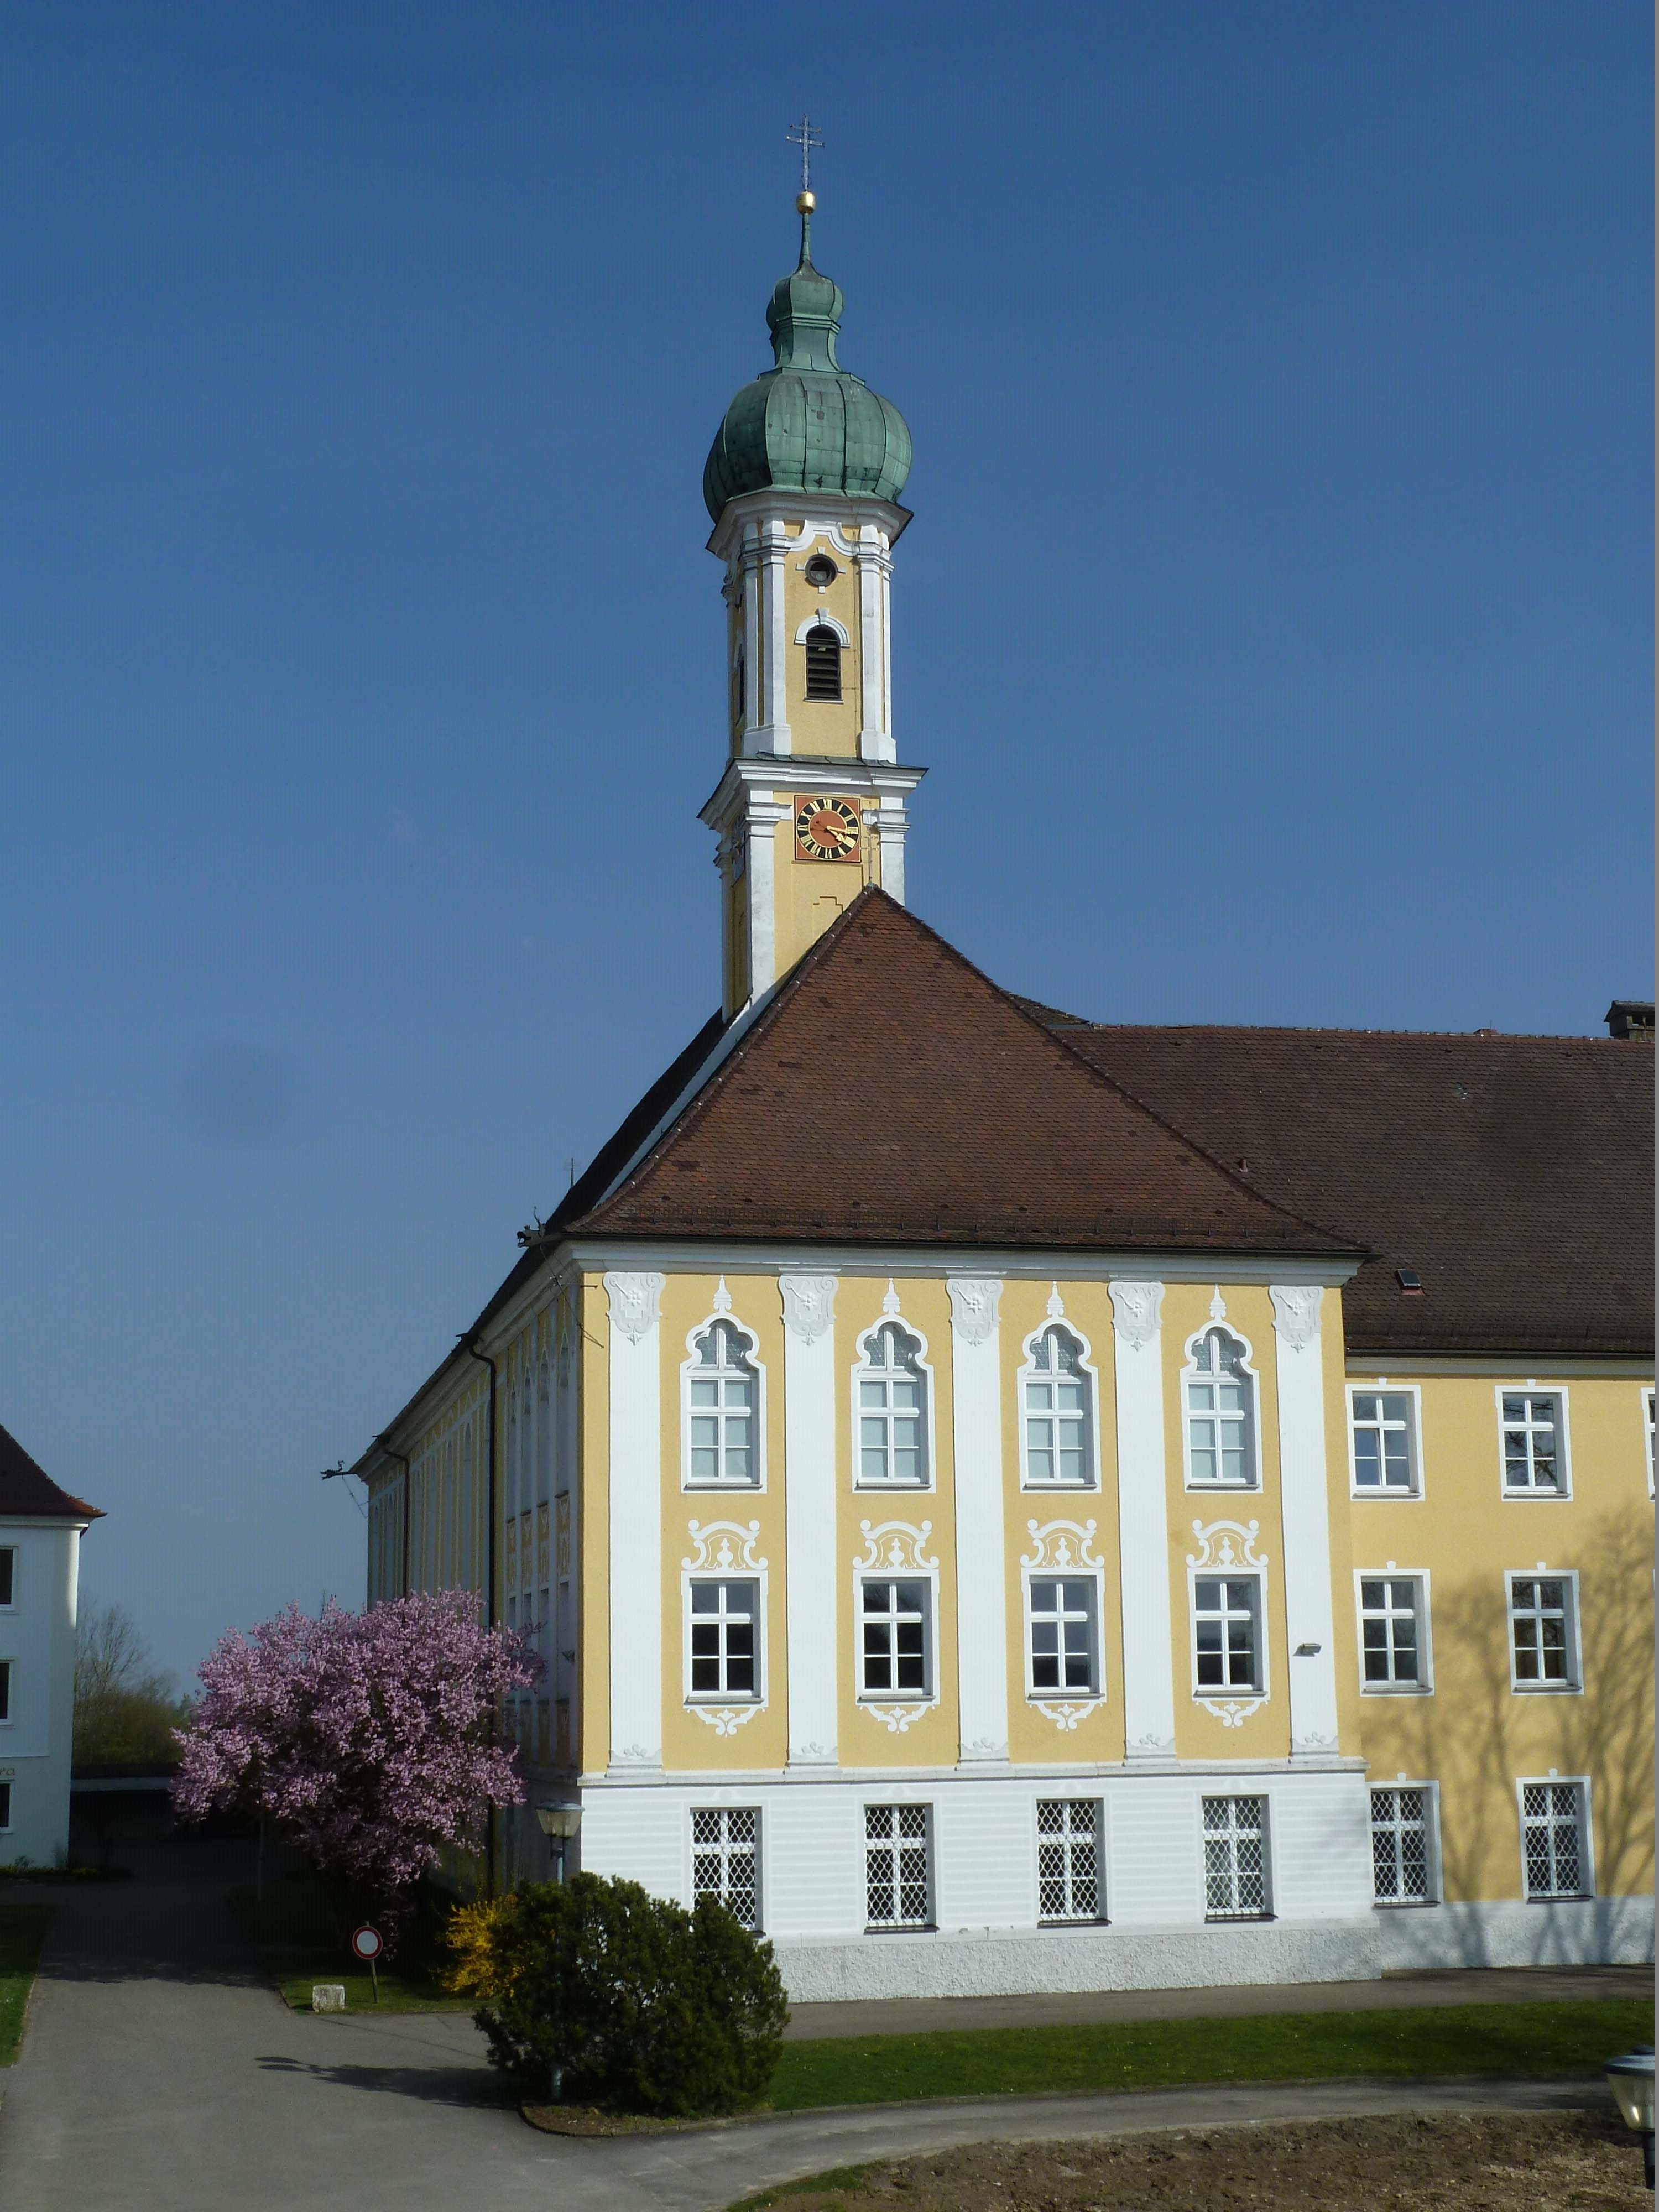 Die heutige Klosterkirche Maria Medingen im schwäbischen Mödingen (Lkr. Dillingen) wurde 1717-1719 von Dominikus Zimmermann, dem Baumeister der „Wies“, nach dem Abriss des Vorgängerbaues neu errichtet. Die Kirche gehört zur Kongregation der Dillinger Franziskanerinnen.